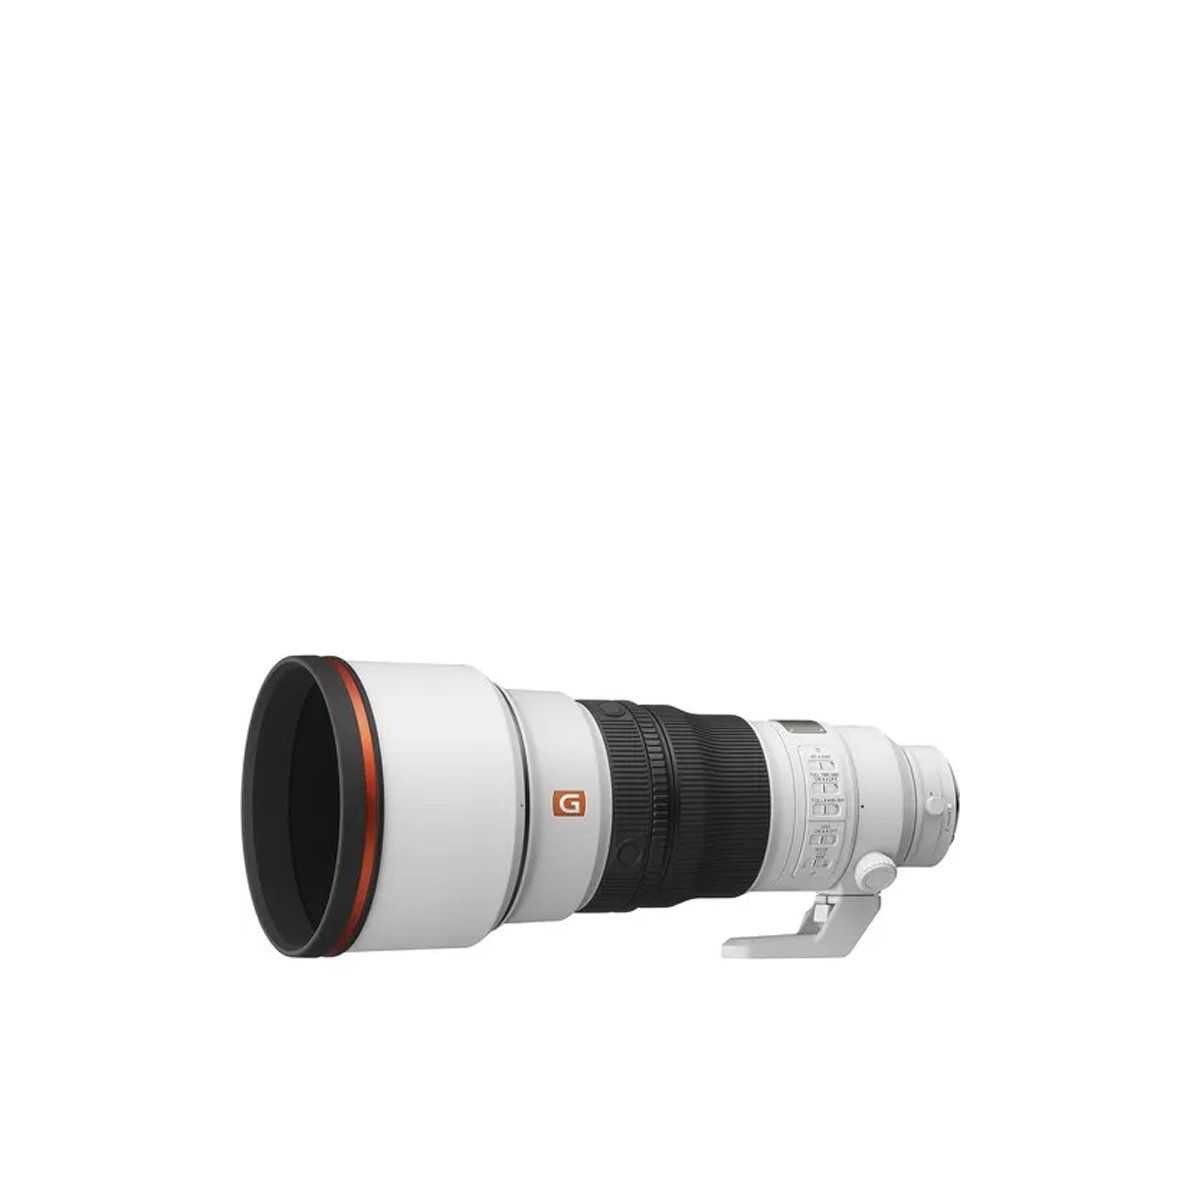  Ống kính Sony FE 300mm F2.8 GM OSS 